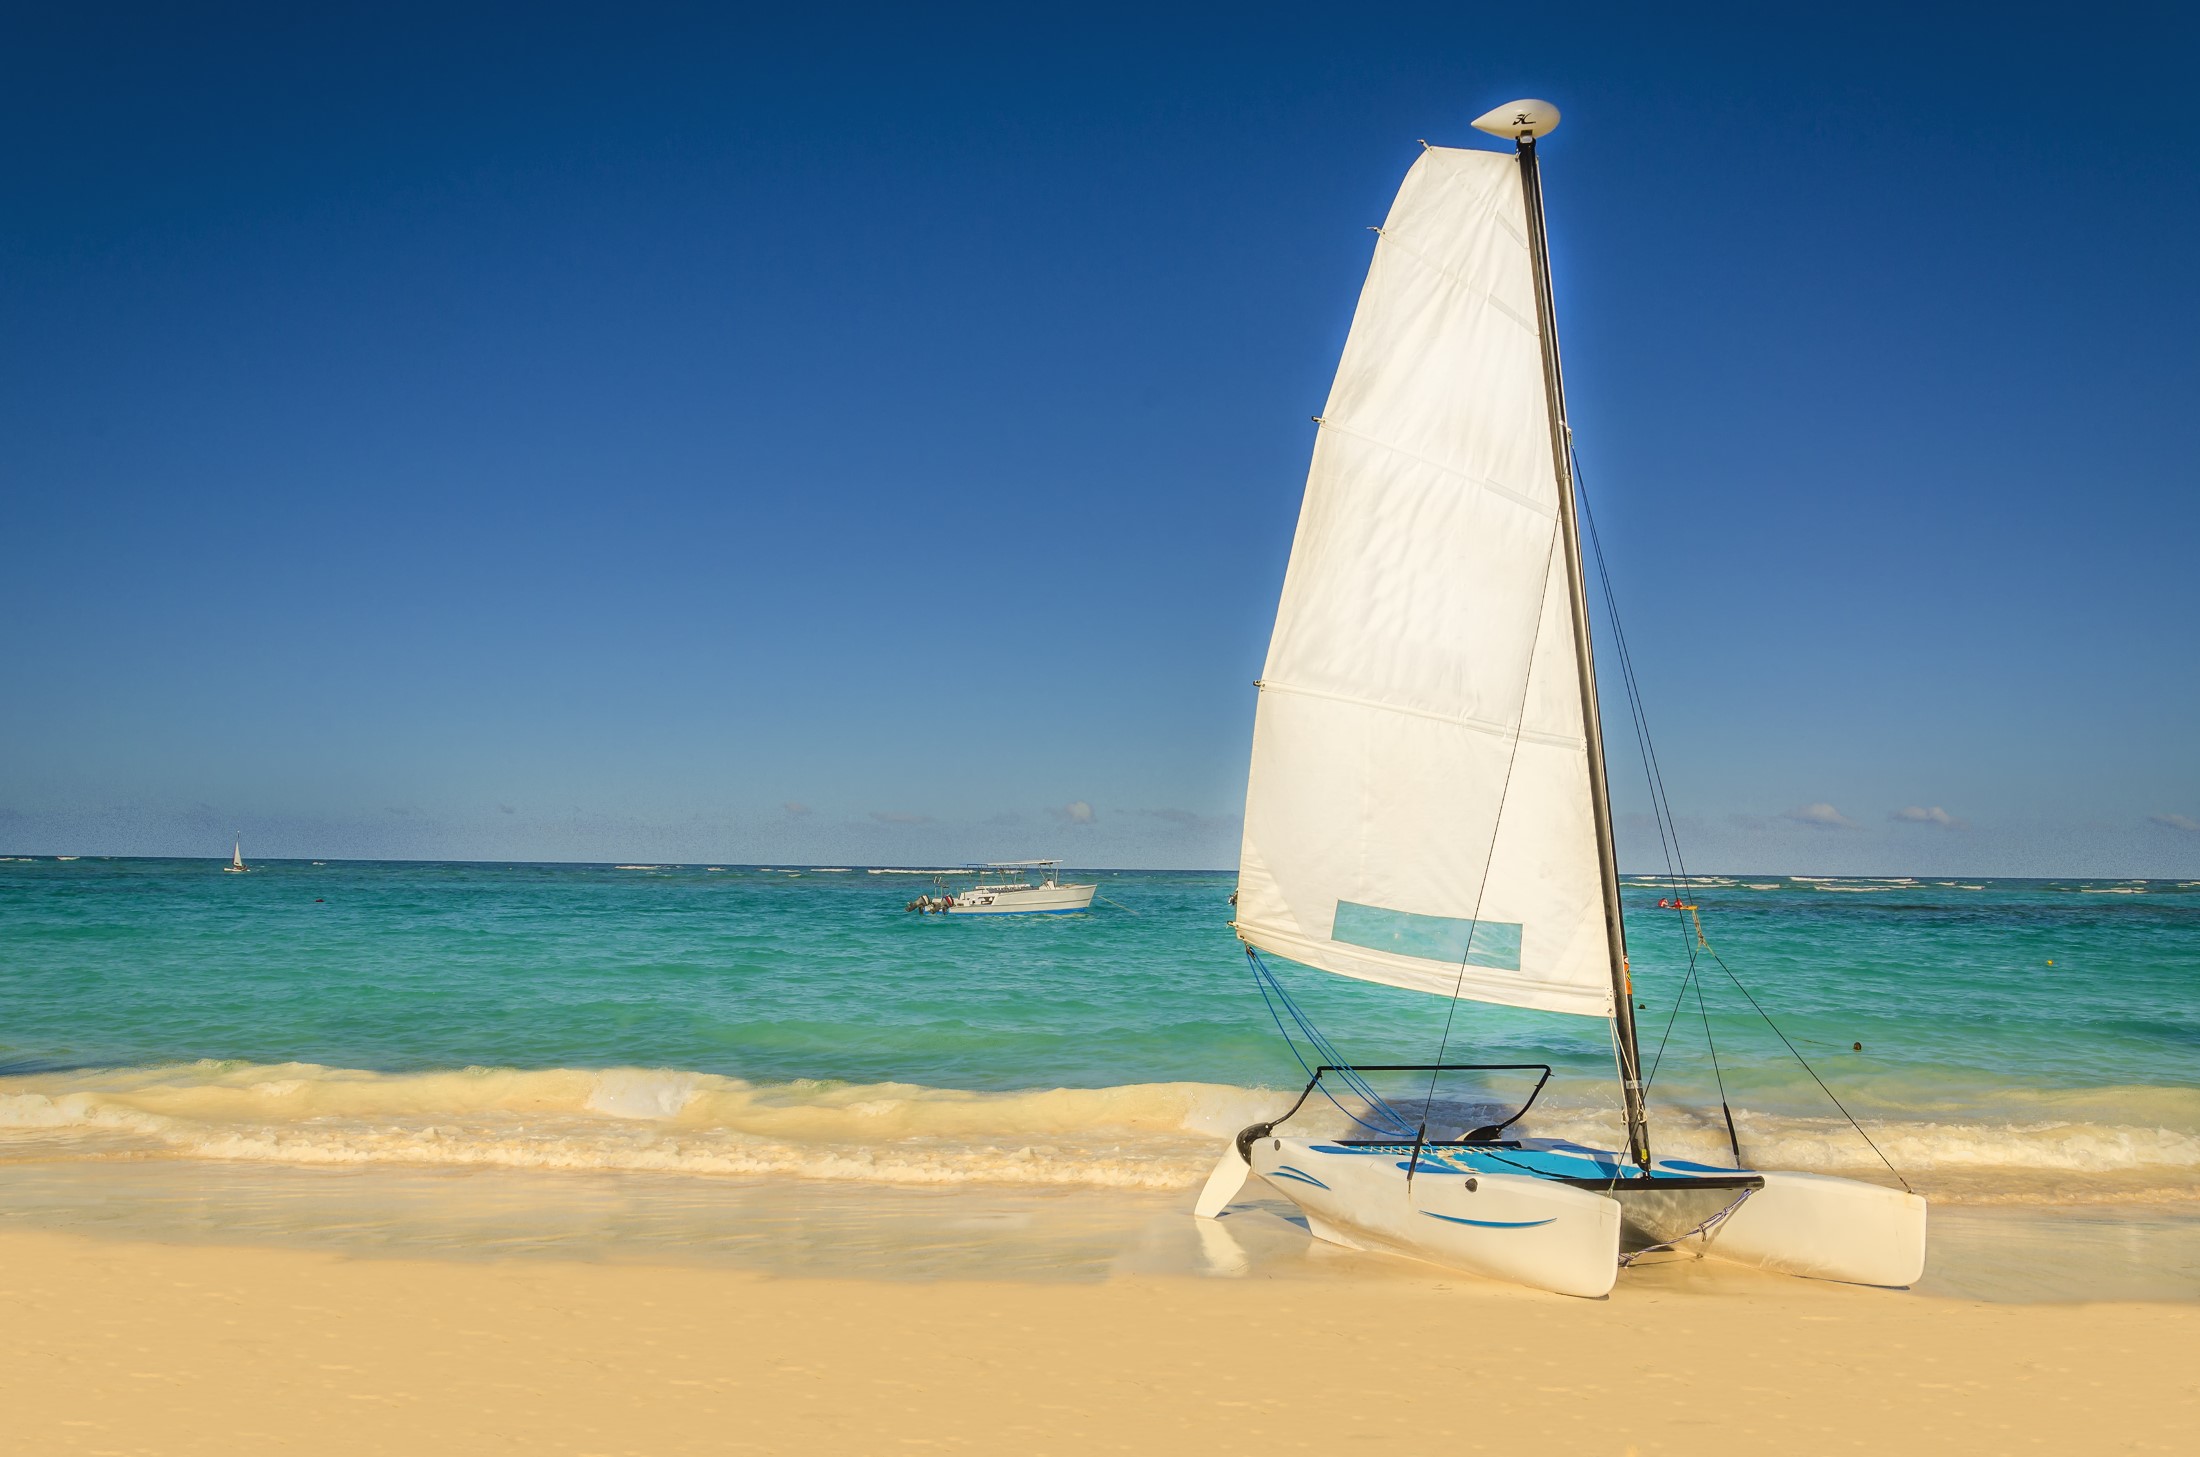 Biały katamaran na egzotycznej karaibskiej plaży na tle złotego piasku, lazurowego oceanu i błękitnego nieba